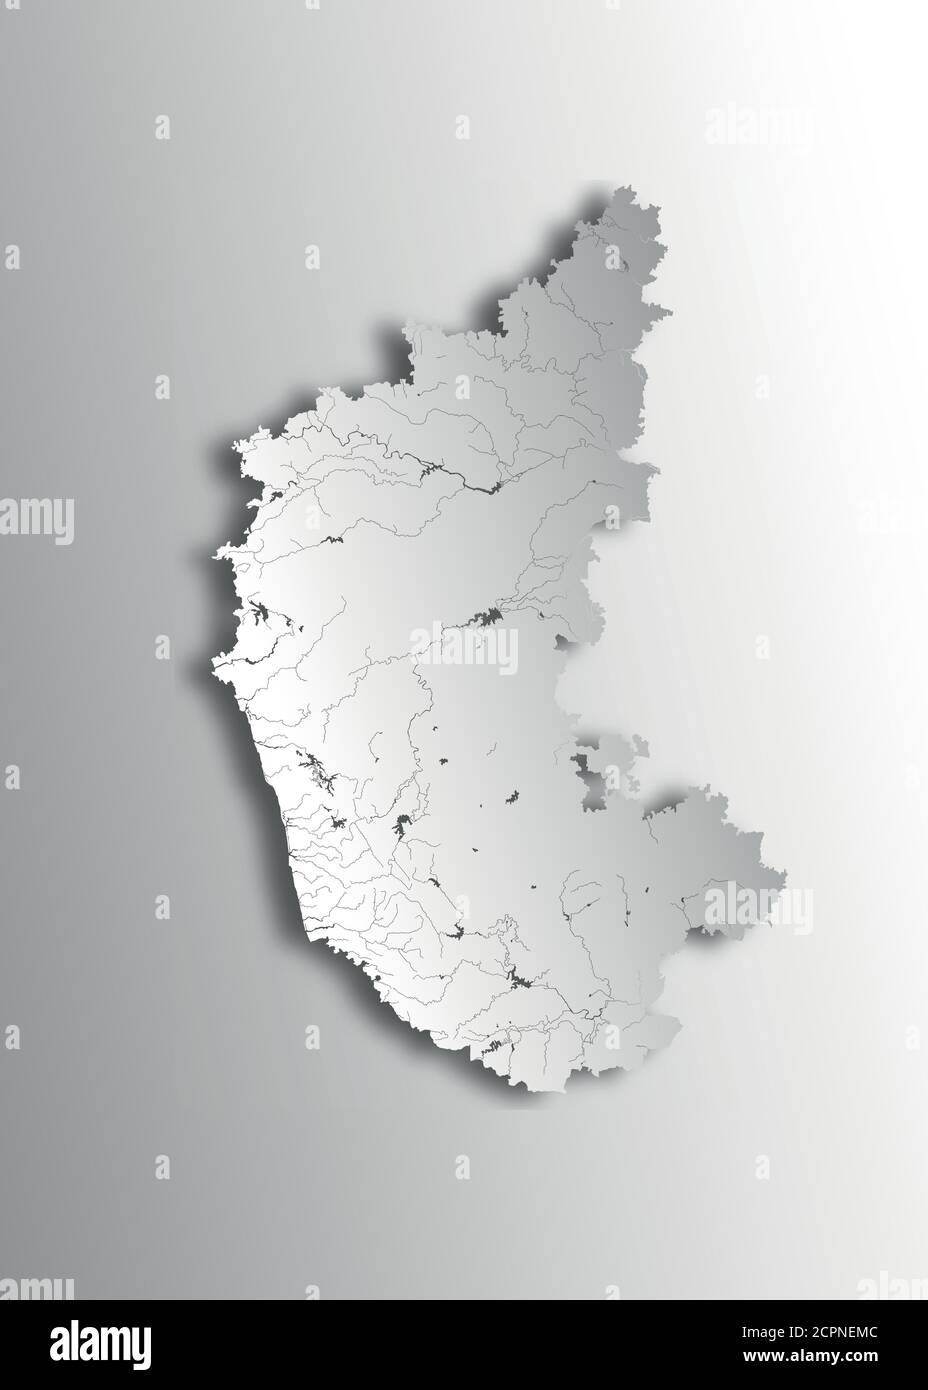 Indien Staaten - Karte von Karnataka mit Papierschnitt-Effekt. Flüsse und Seen werden angezeigt. Bitte sehen Sie sich meine anderen Bilder der kartographischen Serie an - they are al Stock Vektor